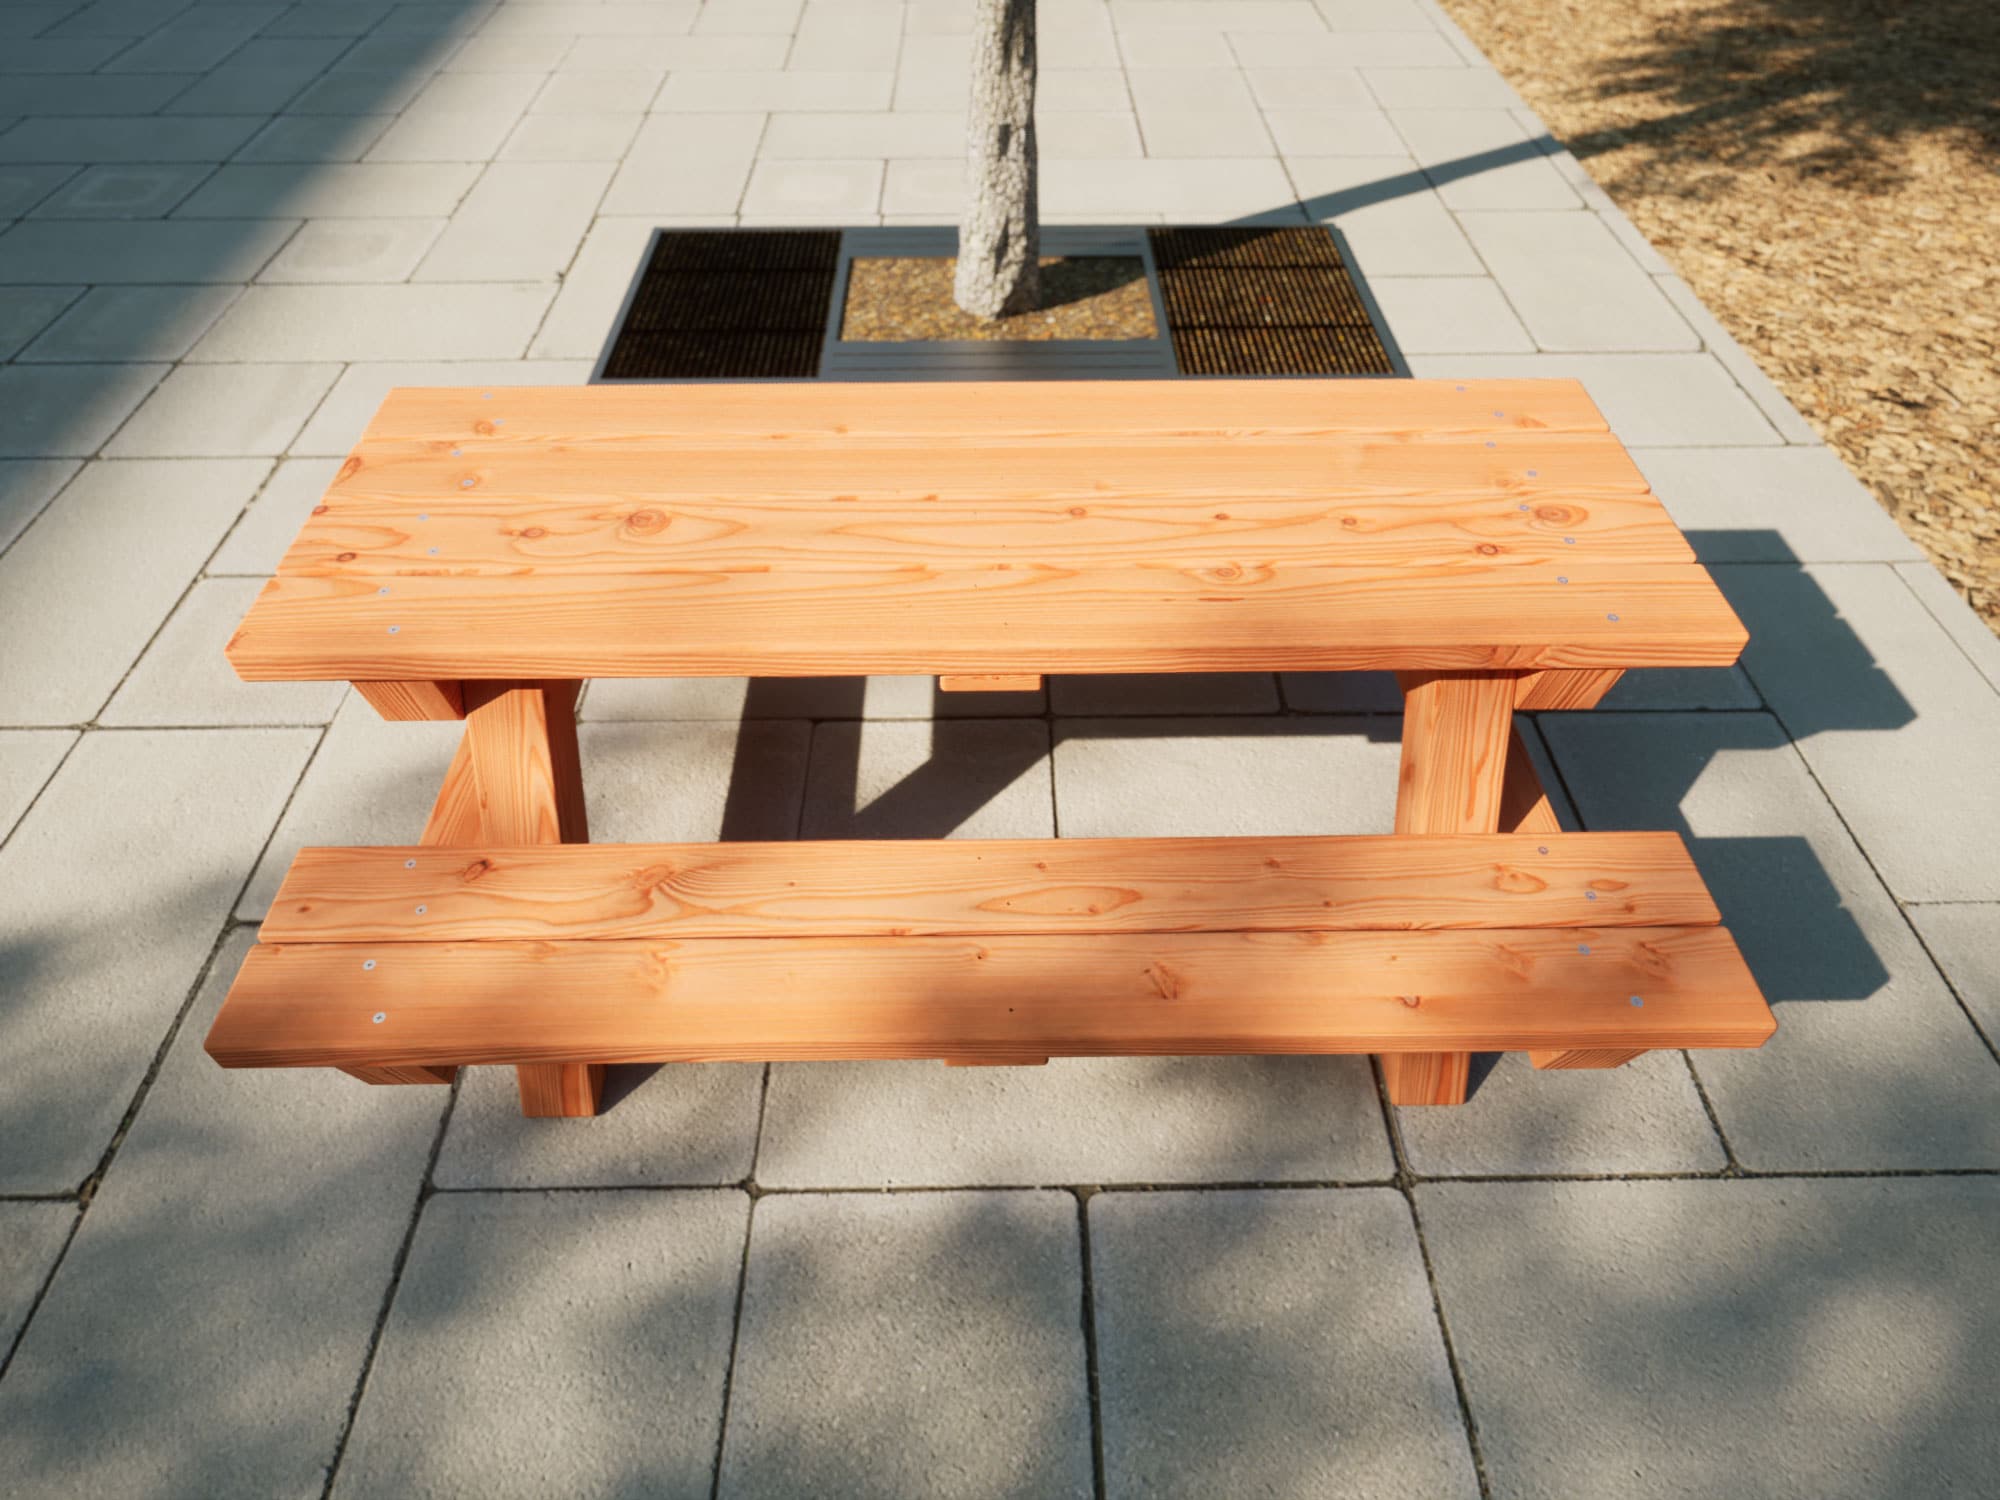 Picknicktisch für Kinder aus Holz in einem Park